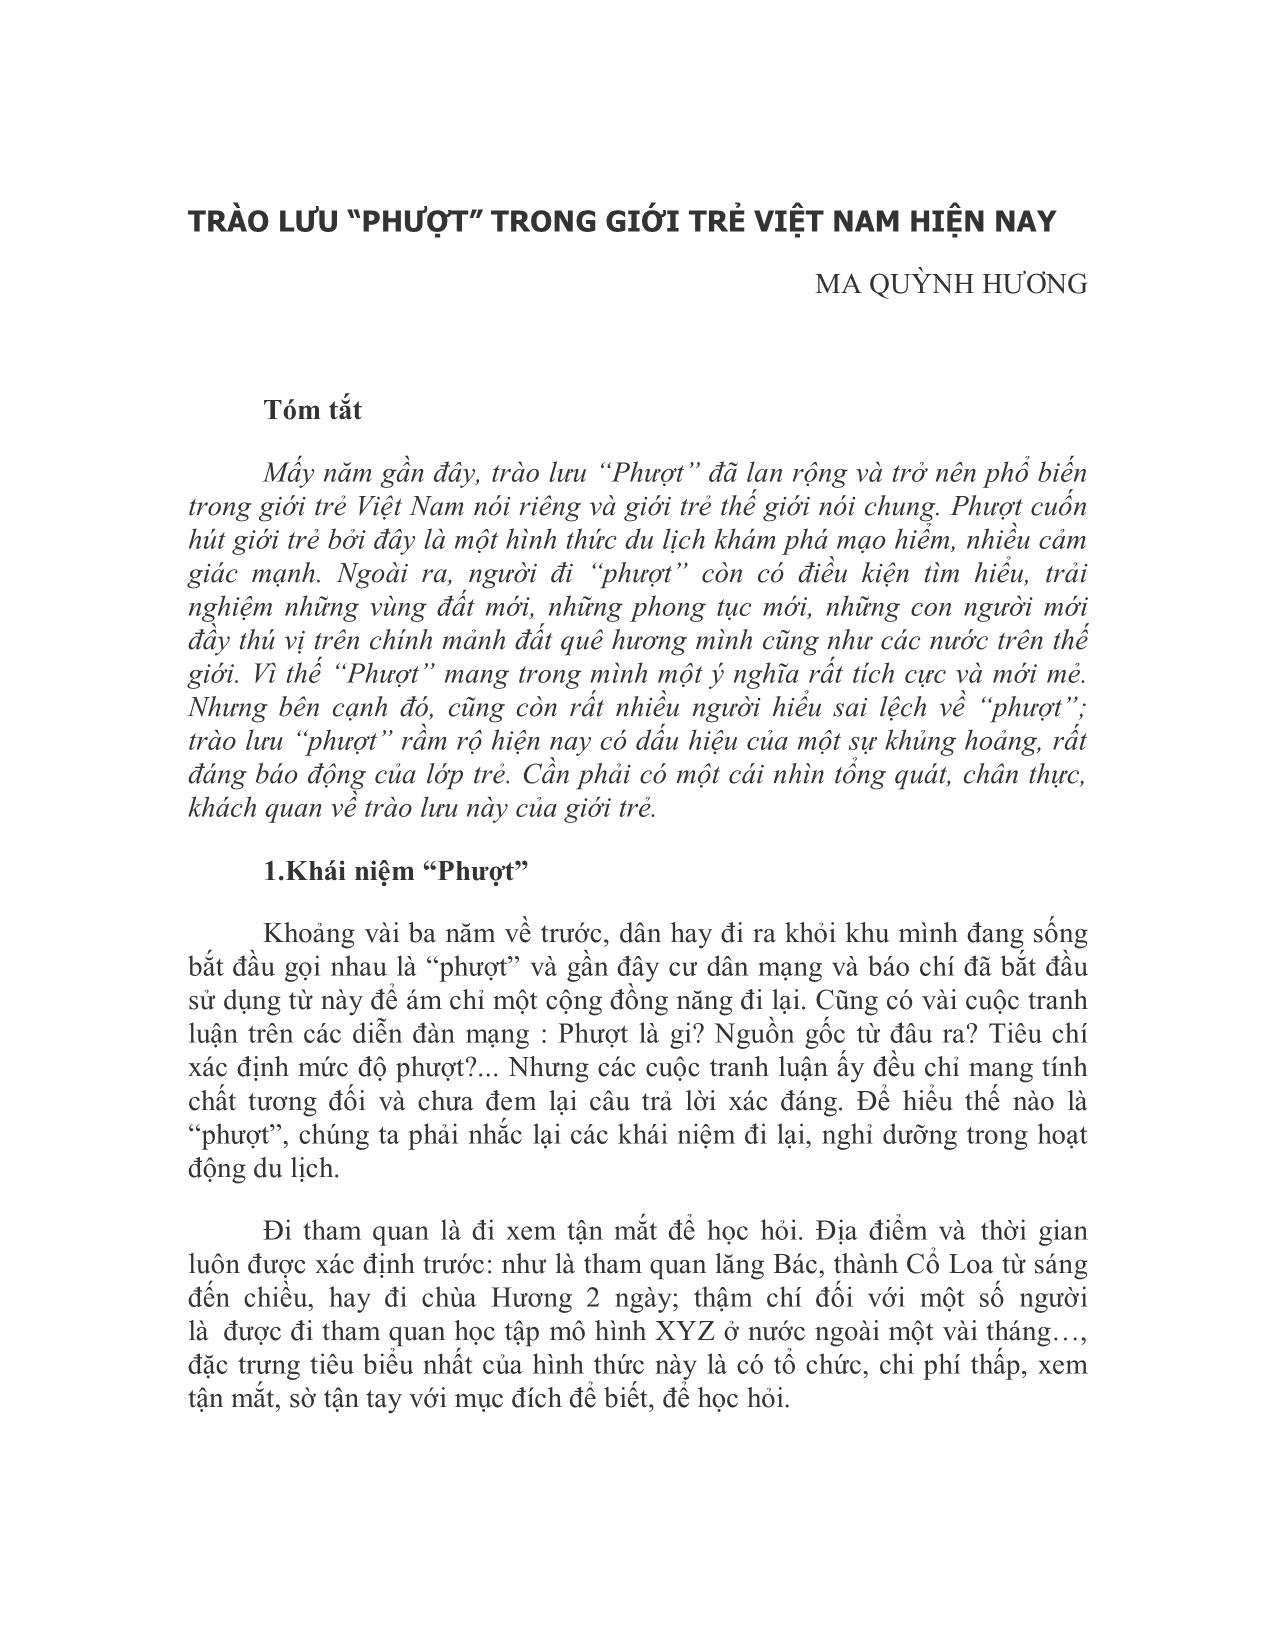 Trào lưu “phượt” trong giới trẻ Việt Nam hiện nay trang 1